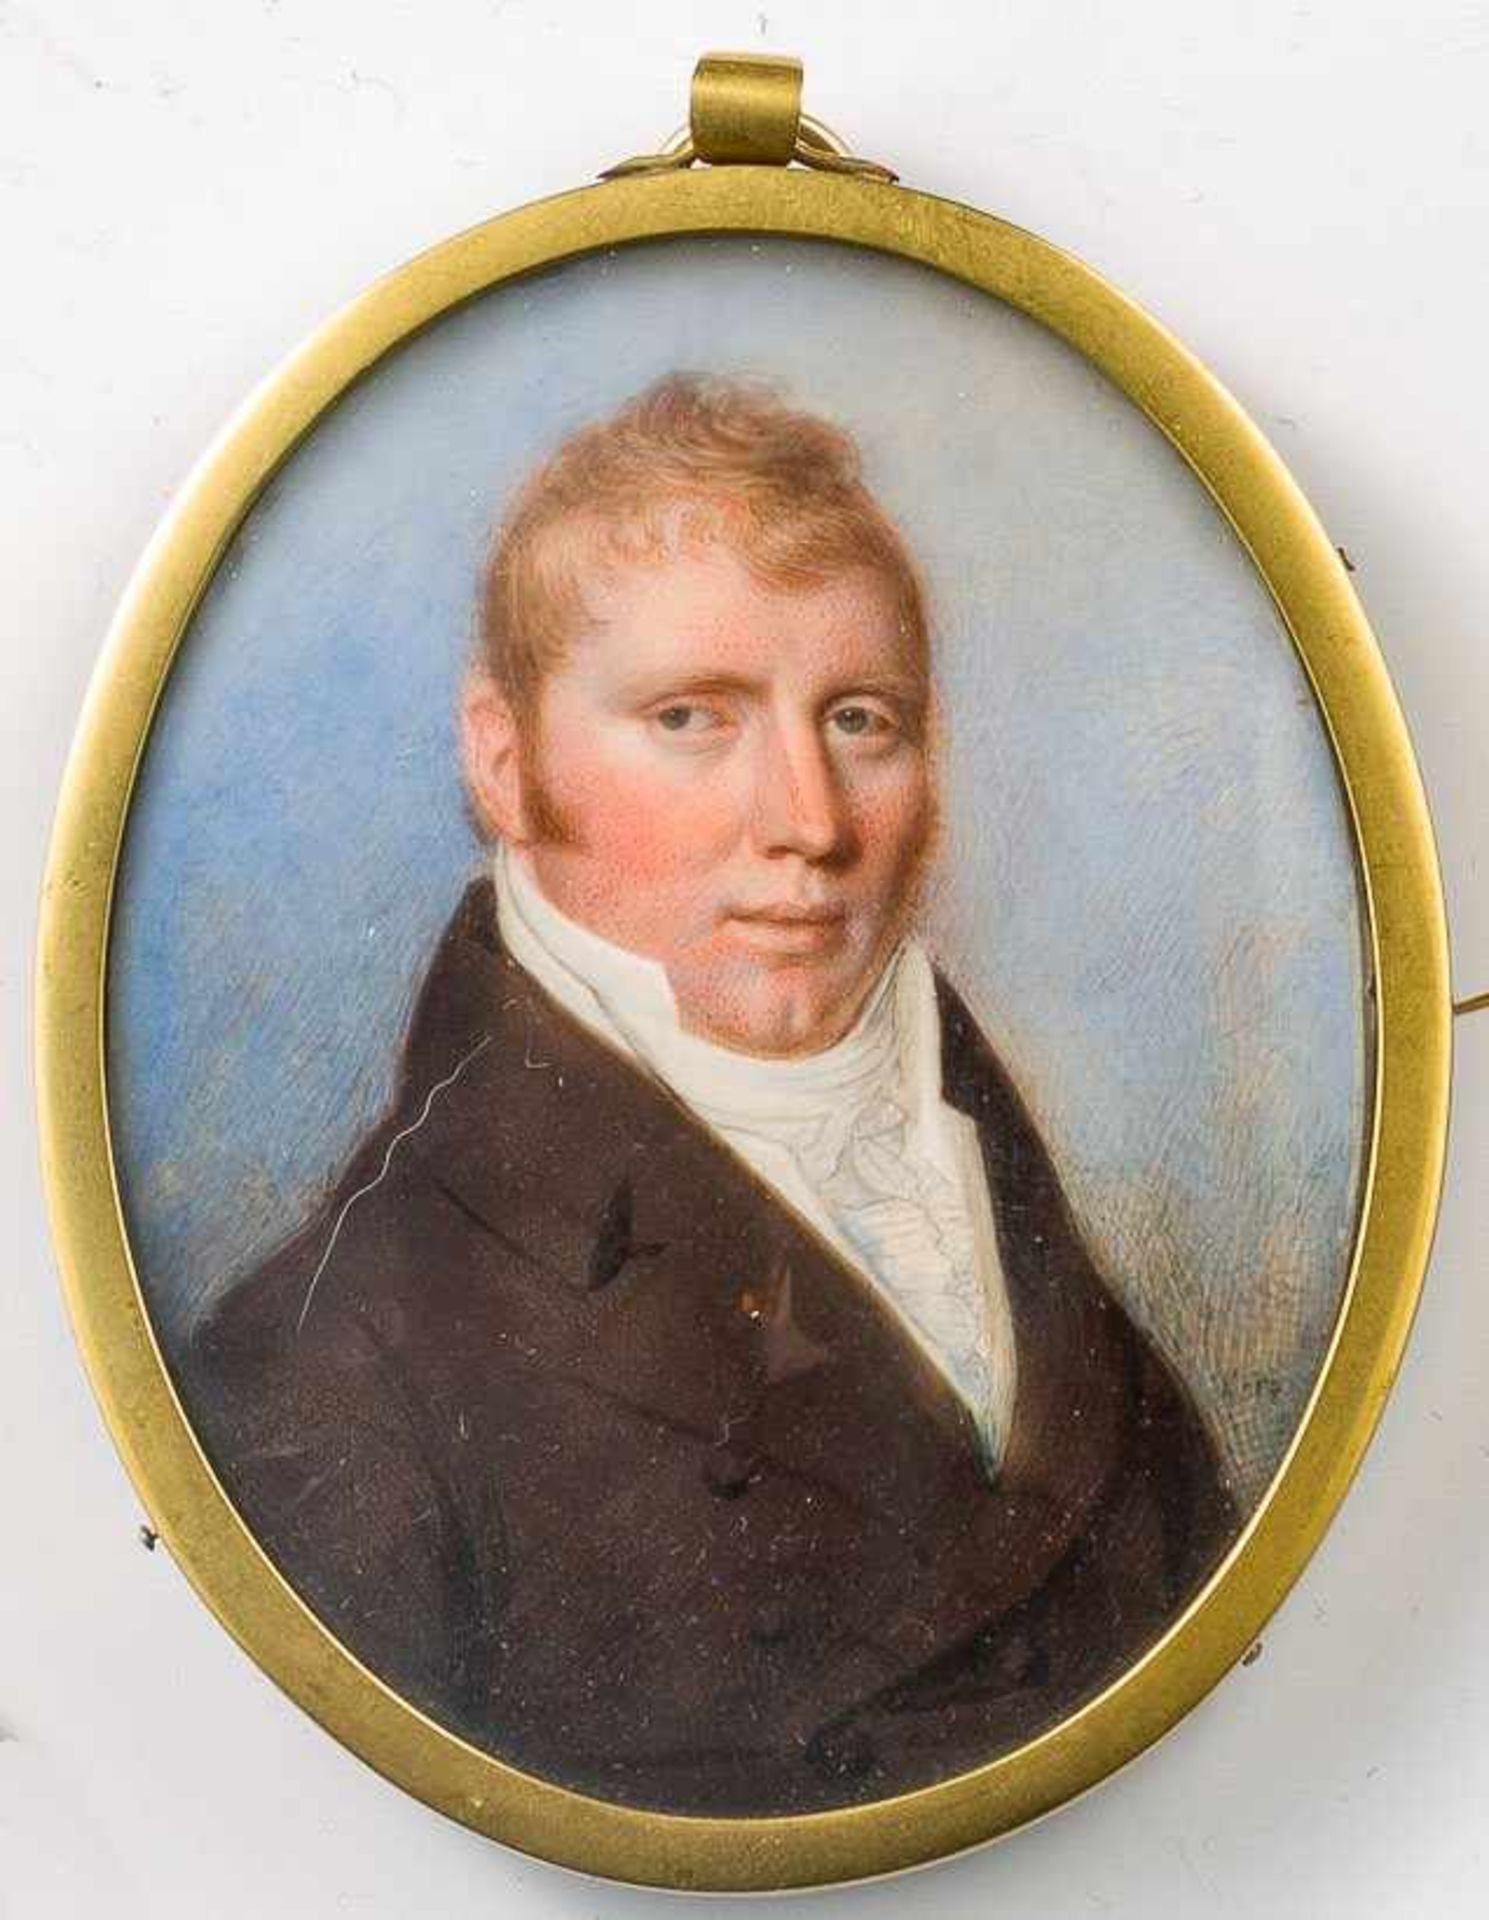 Hazlehurst, Thomas (England, nachweisbar um 1740- nach 1821)Rotbackiger Gentleman mit roten